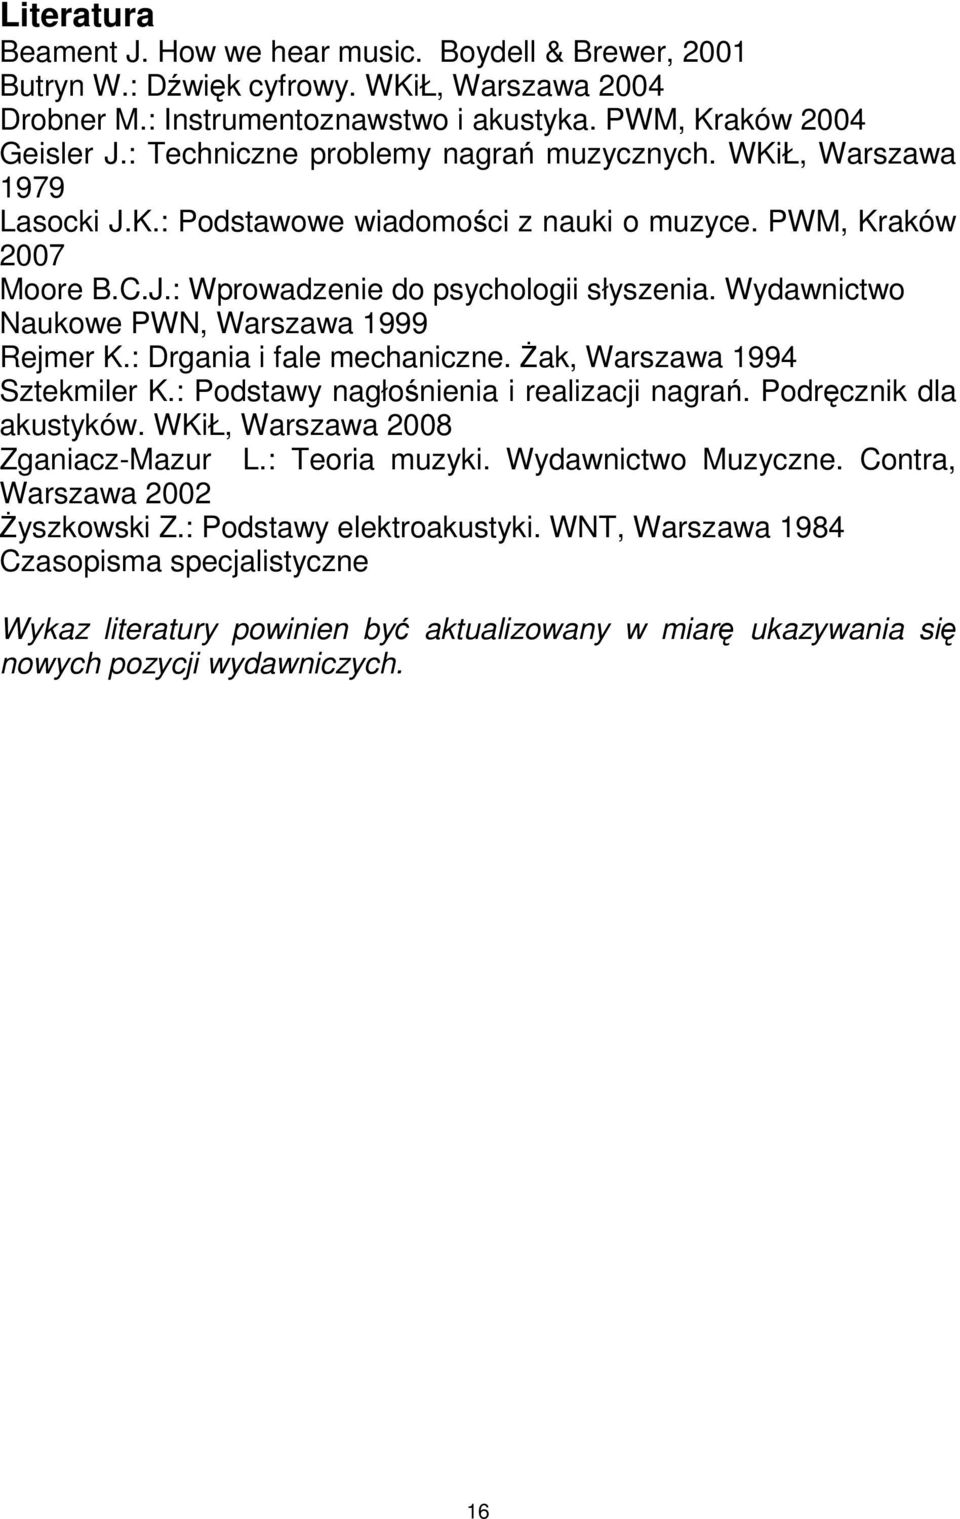 Wydawnictwo Naukowe PWN, Warszawa 1999 Rejmer K.: Drgania i fale mechaniczne. śak, Warszawa 1994 Sztekmiler K.: Podstawy nagłośnienia i realizacji nagrań. Podręcznik dla akustyków.